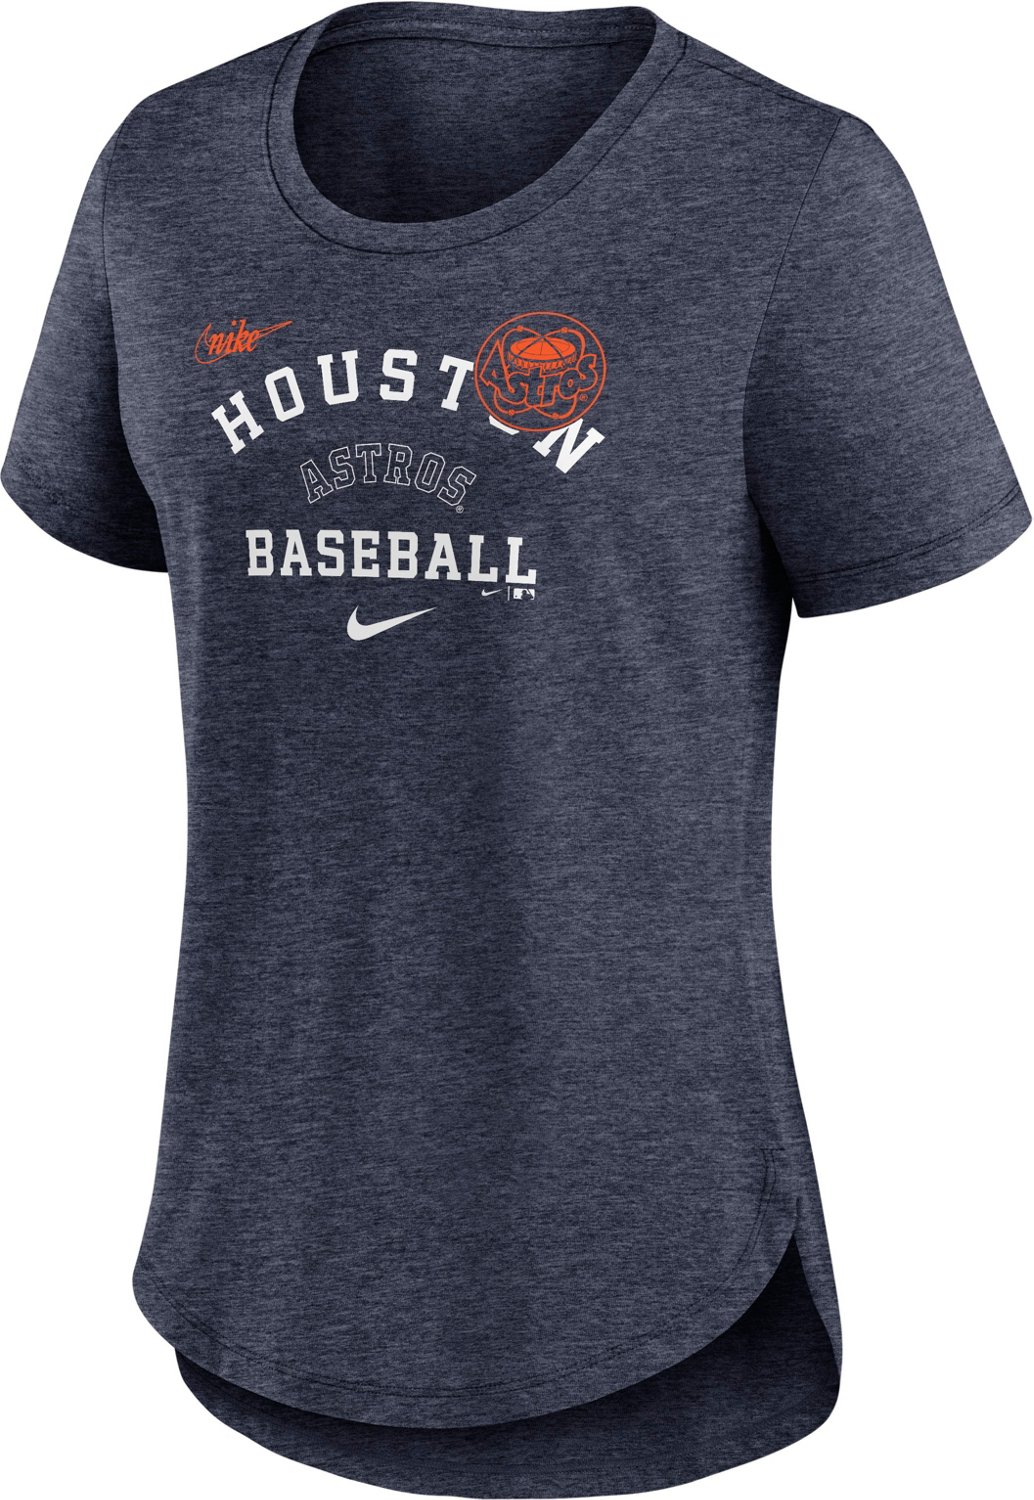 Nike Women's Houston Astros Rewind Color Remix T-shirt